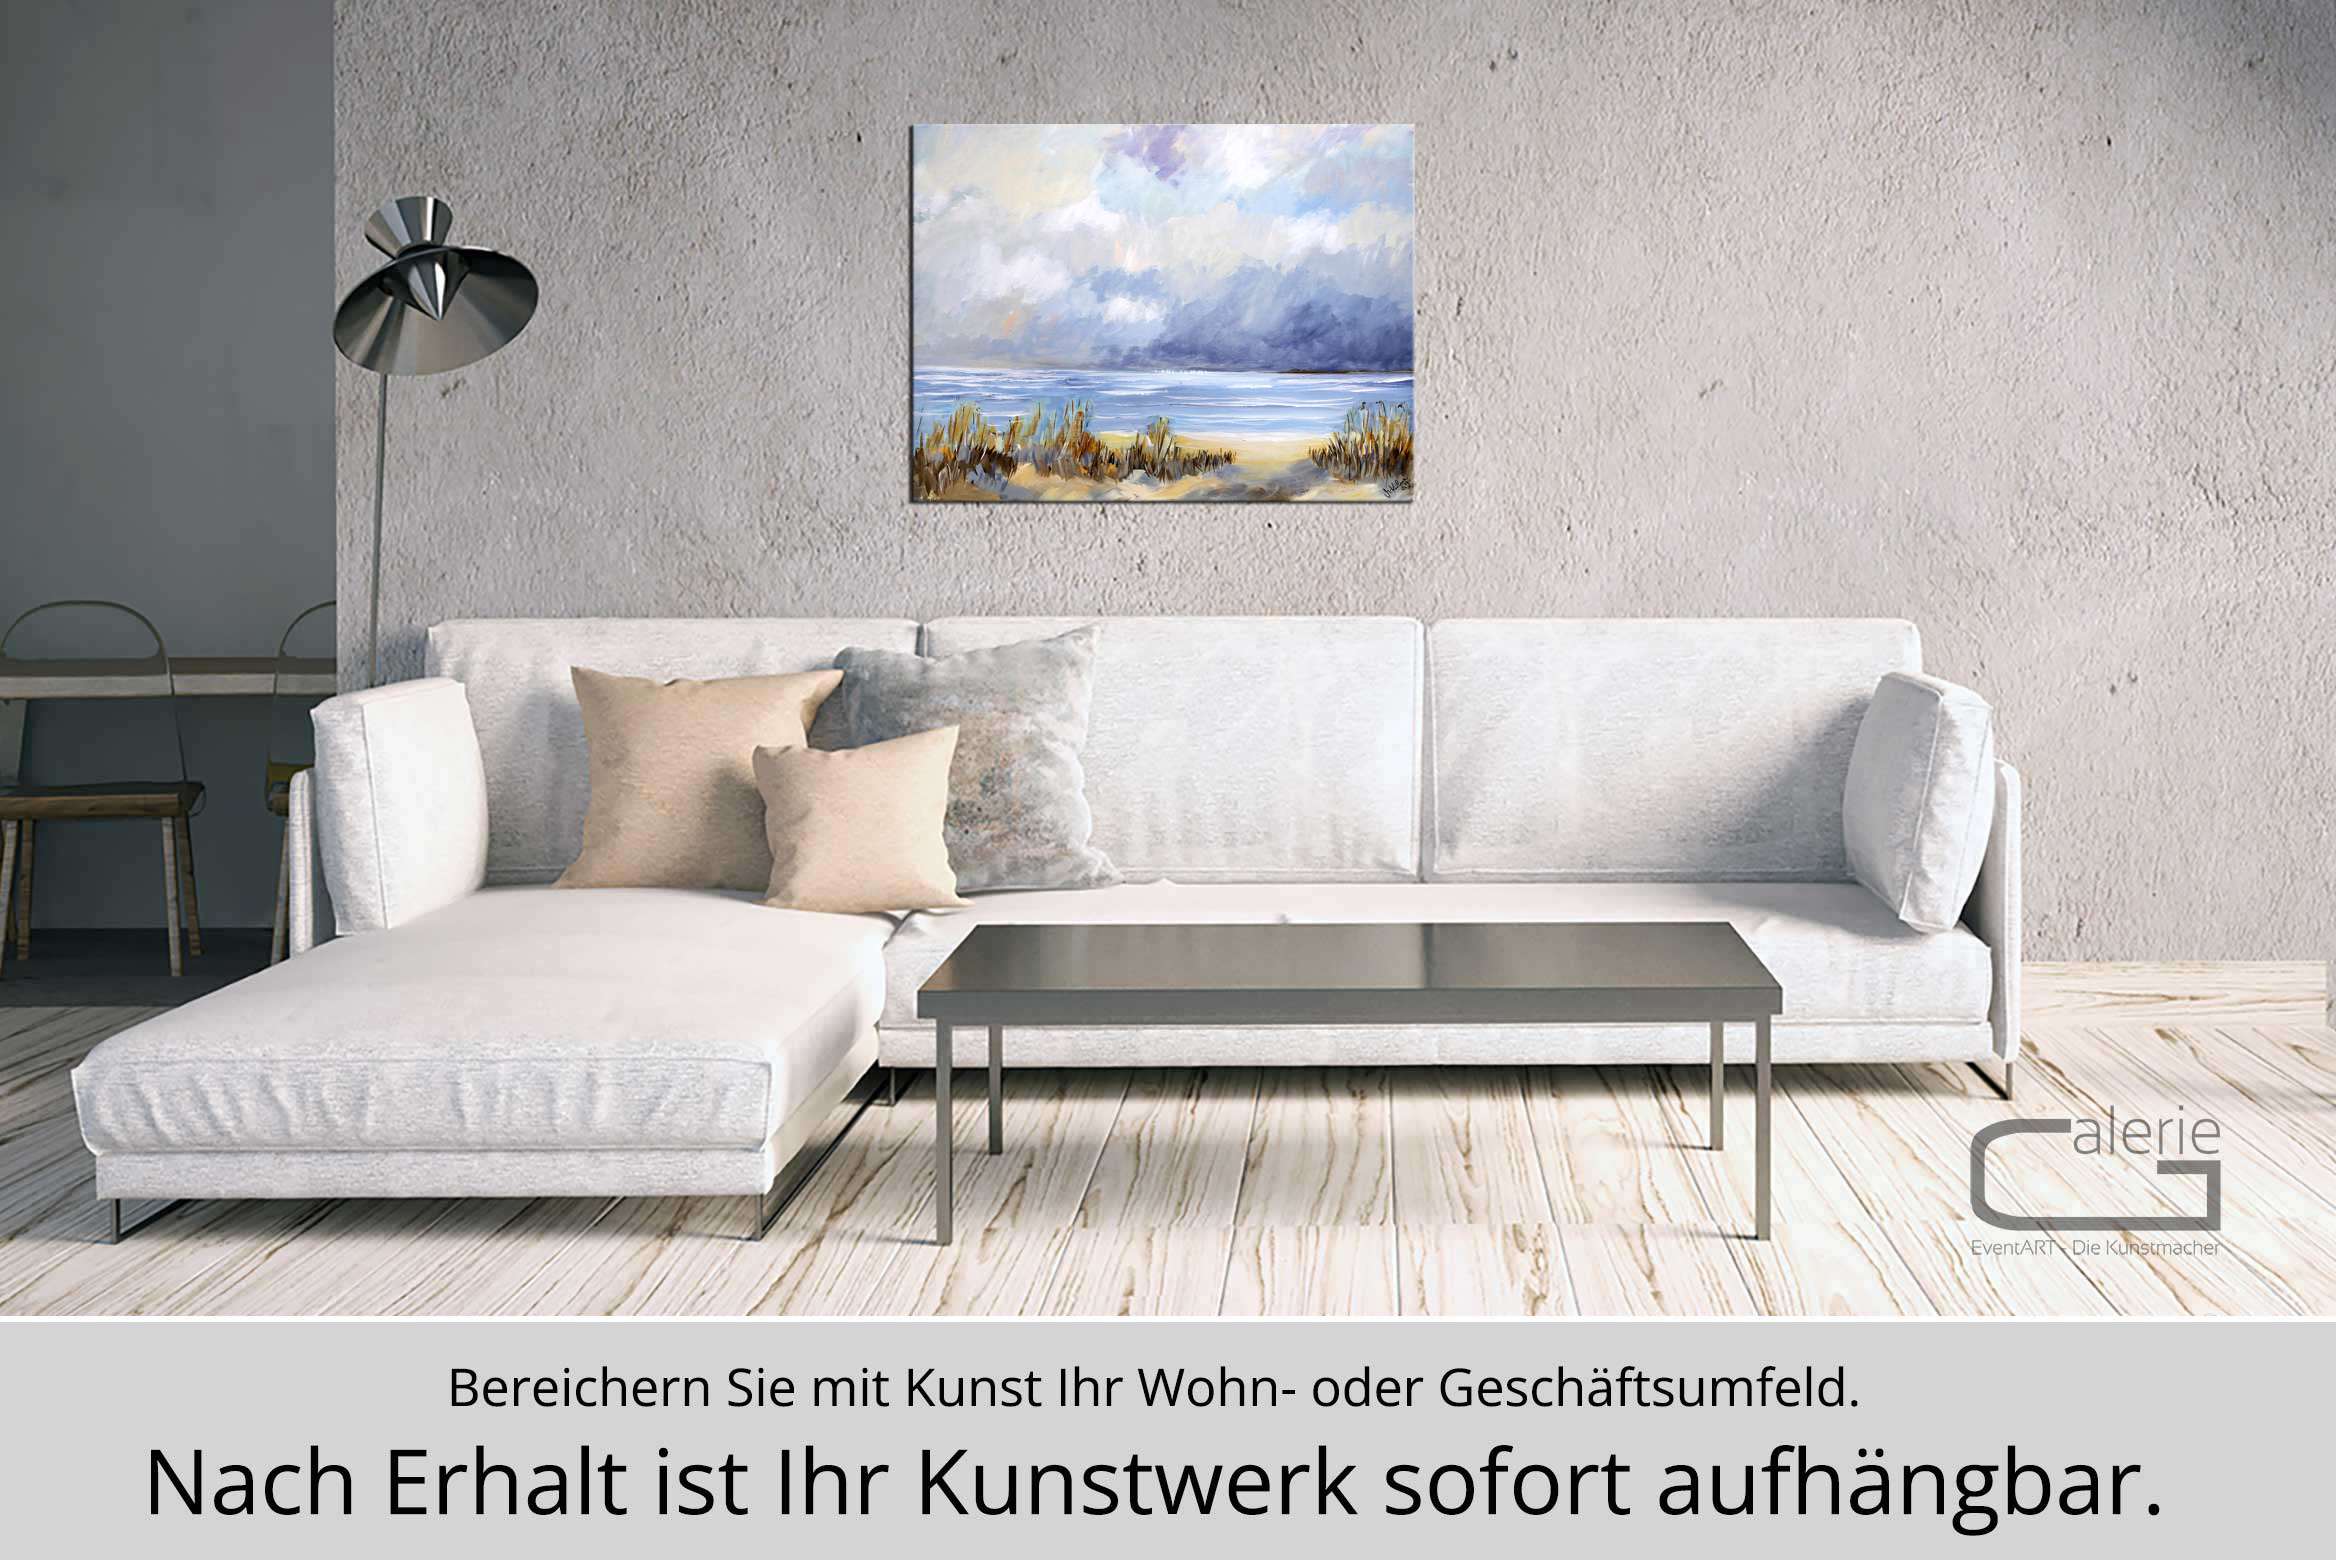 M. Kühne: "Sturmwolken", Edition, signierter Kunstdruck